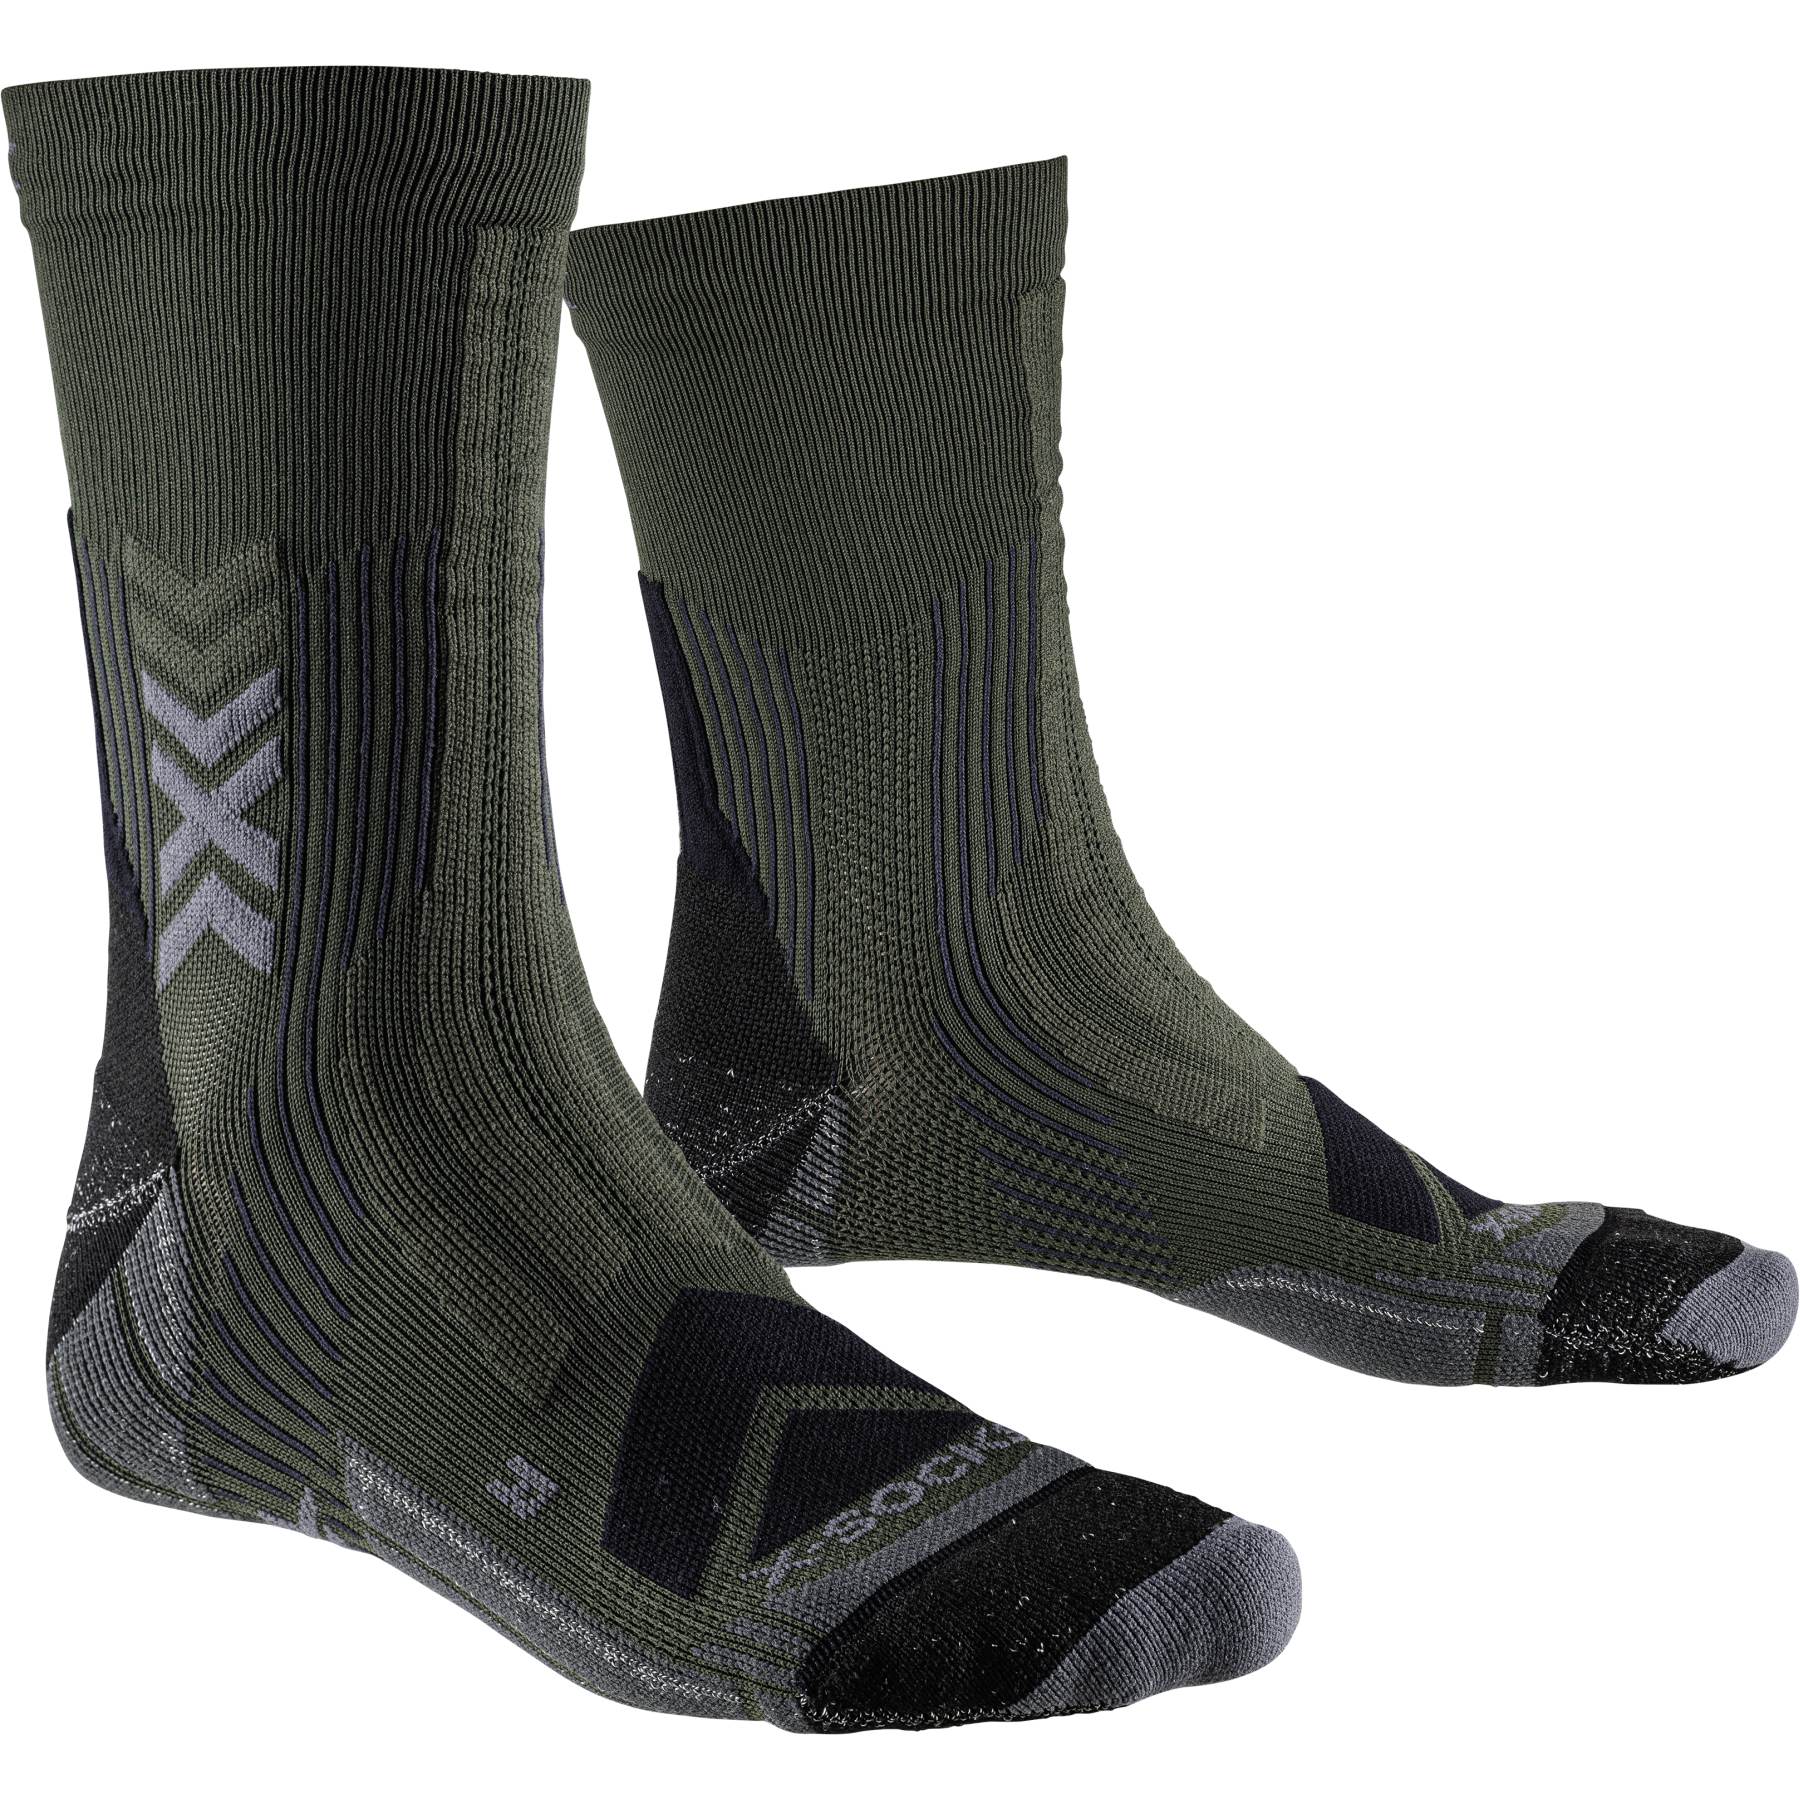 Produktbild von X-Socks Hike Expert Silver Crew Socken - dark sage/black